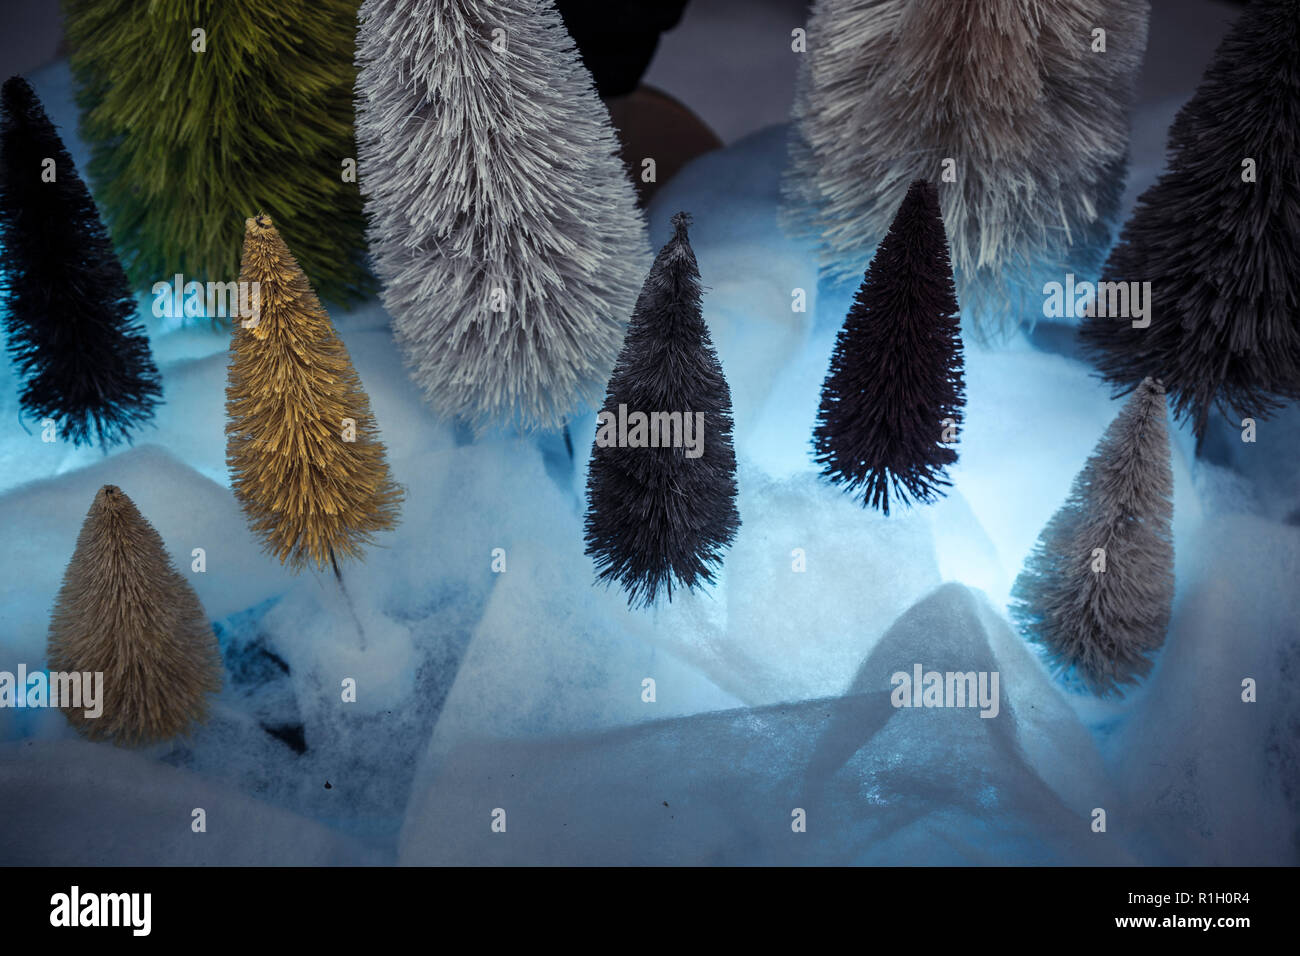 Negozio di stagionali finestra di visualizzazione colorata in miniatura di abeti e simulazione di neve. Foto Stock